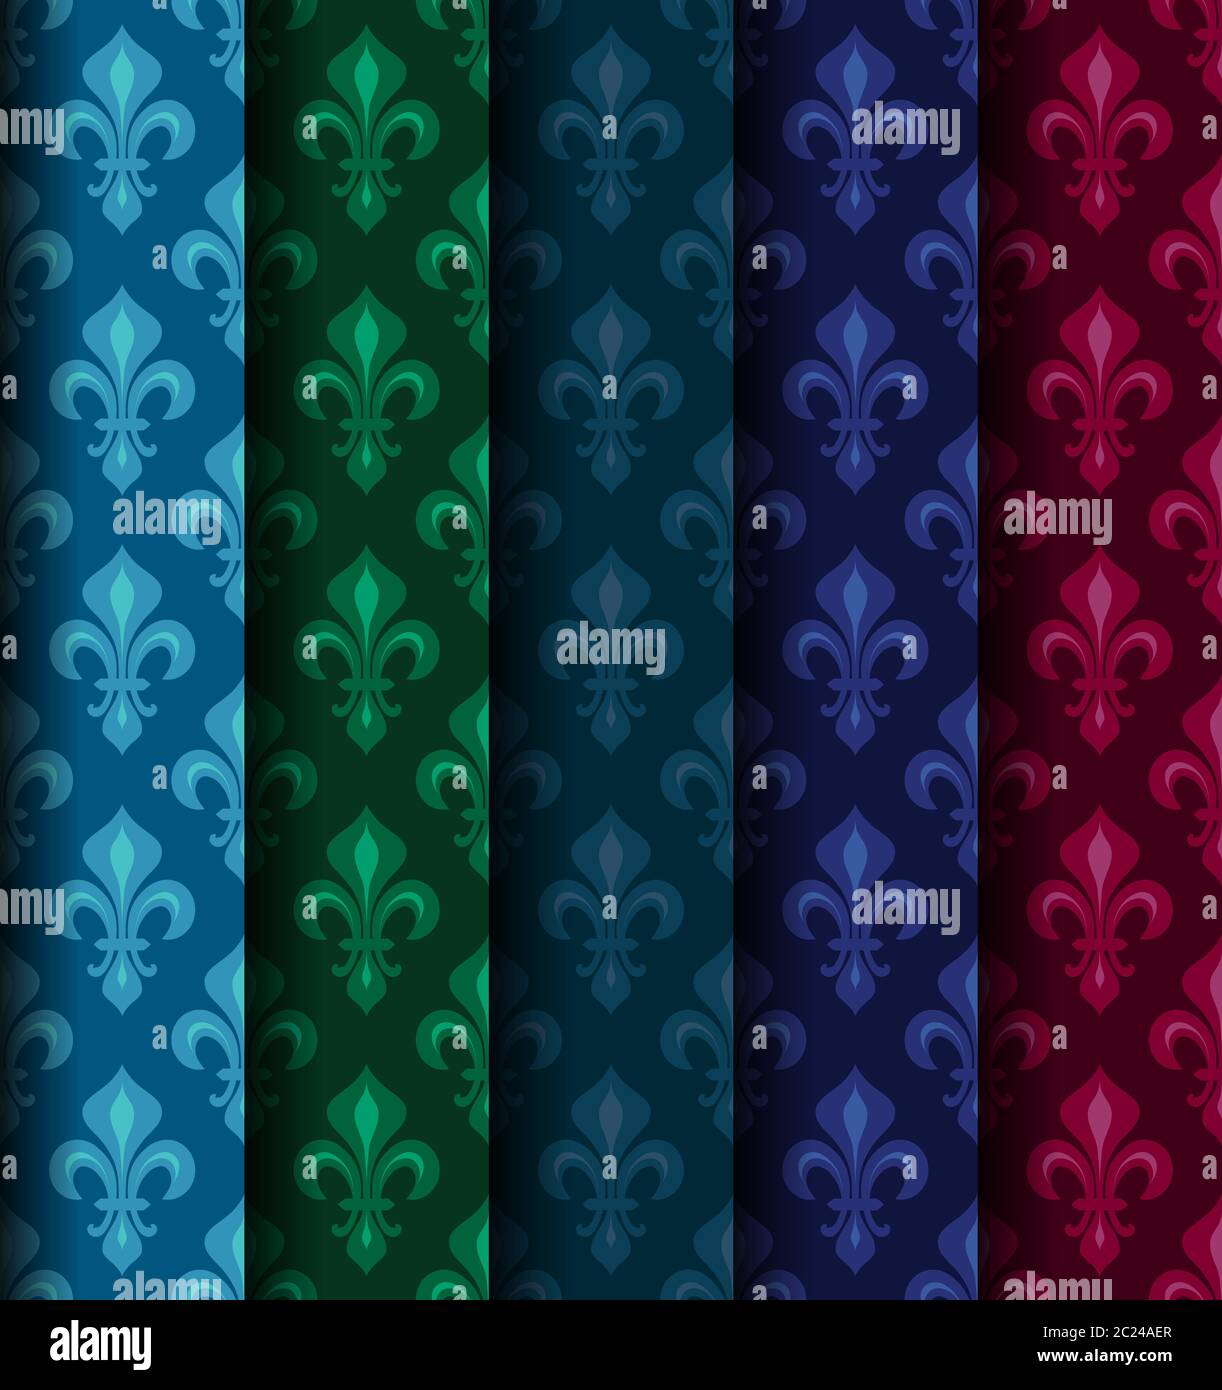 Lys héraldique royale (fleur de lis) -- papier peint couleur riche, textile, tissu motif transparent, lot de 5 rouleaux d'versicolored. Banque D'Images